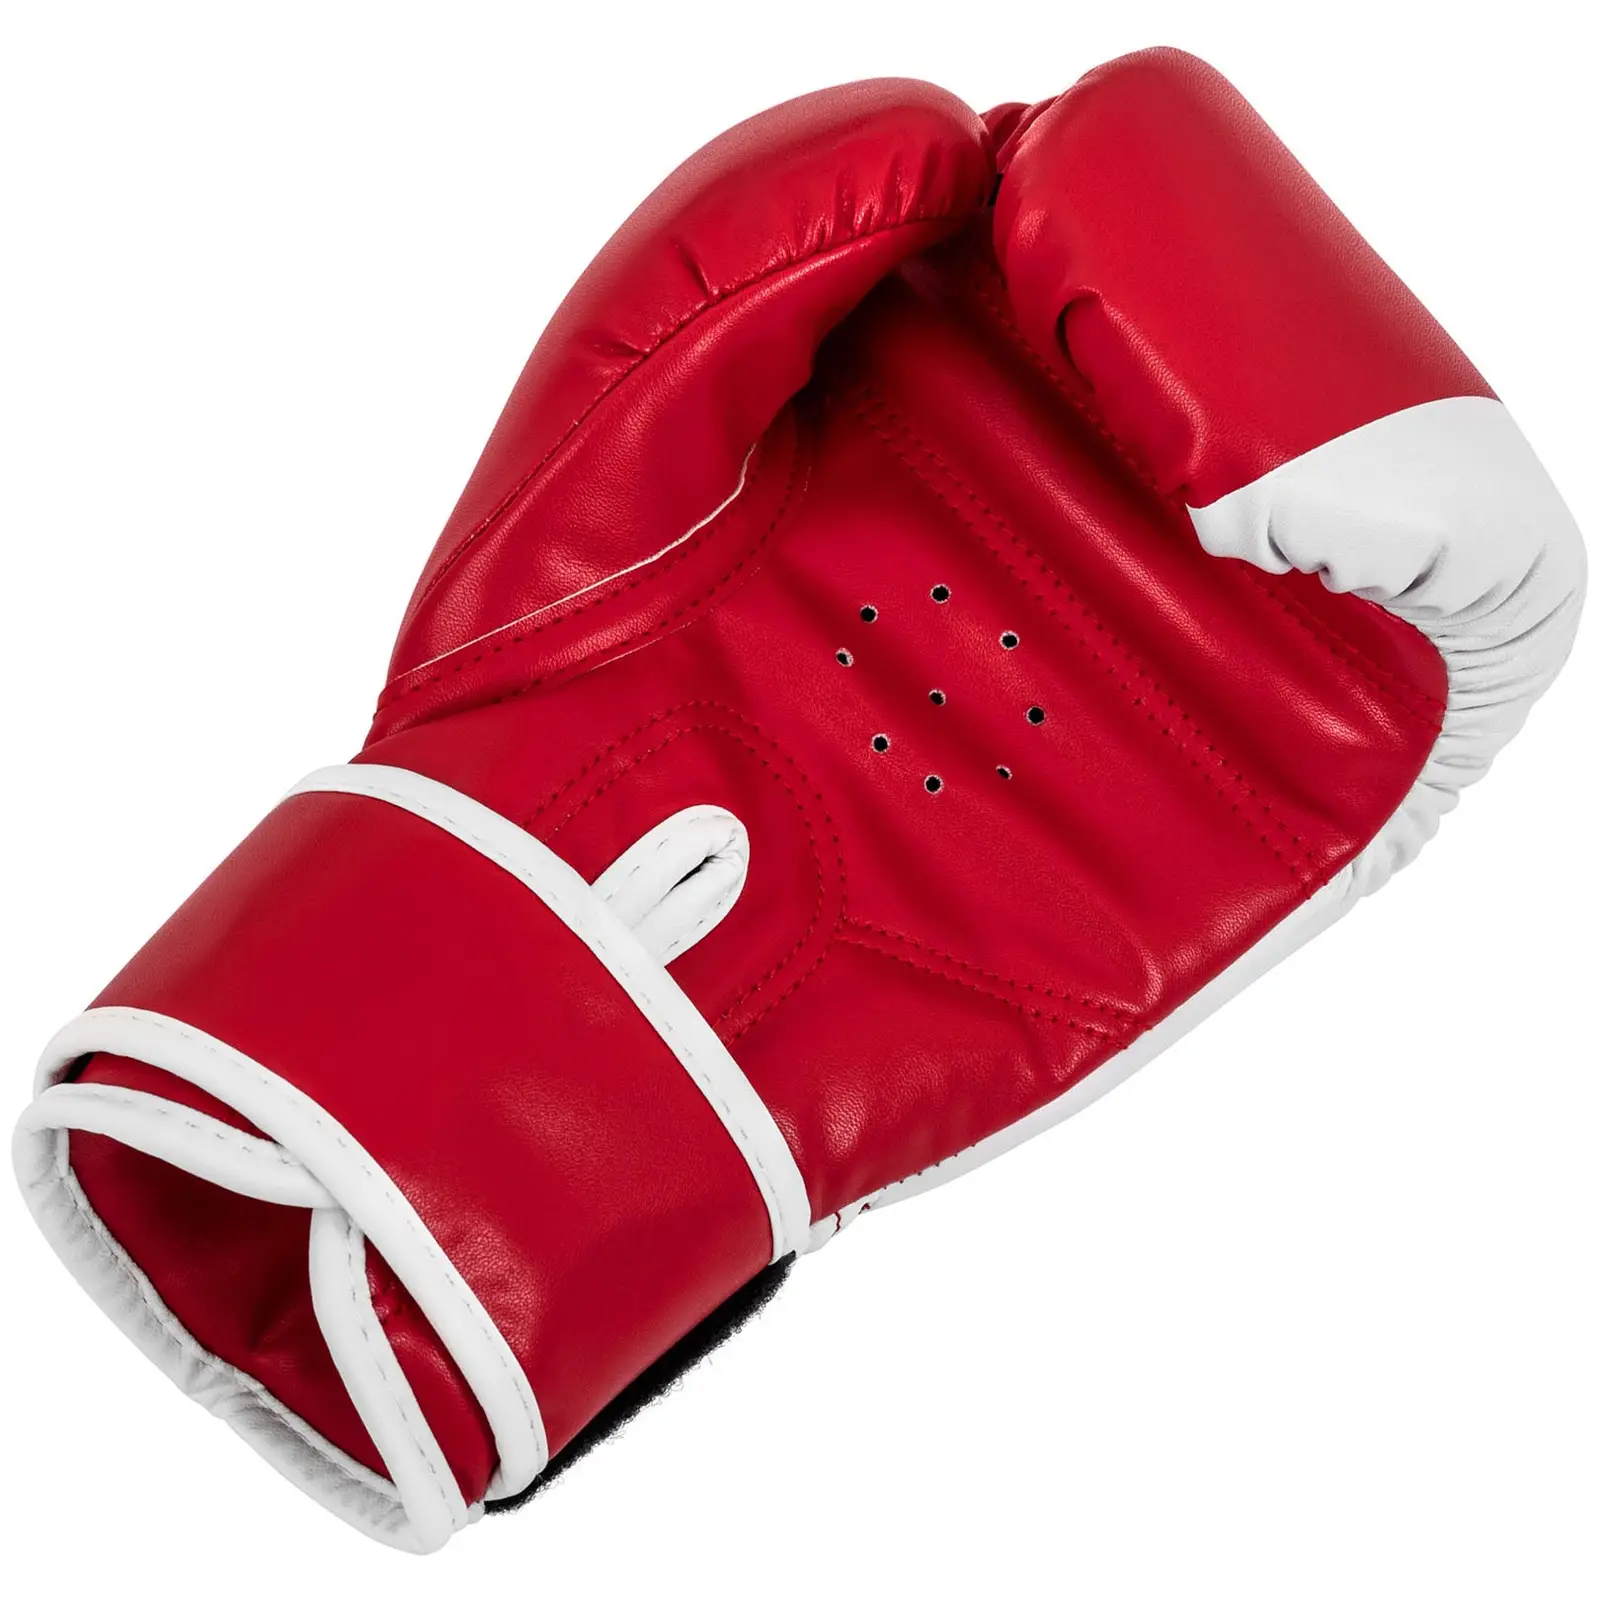 Dětské boxerské rukavice - 6 oz - červenobílé